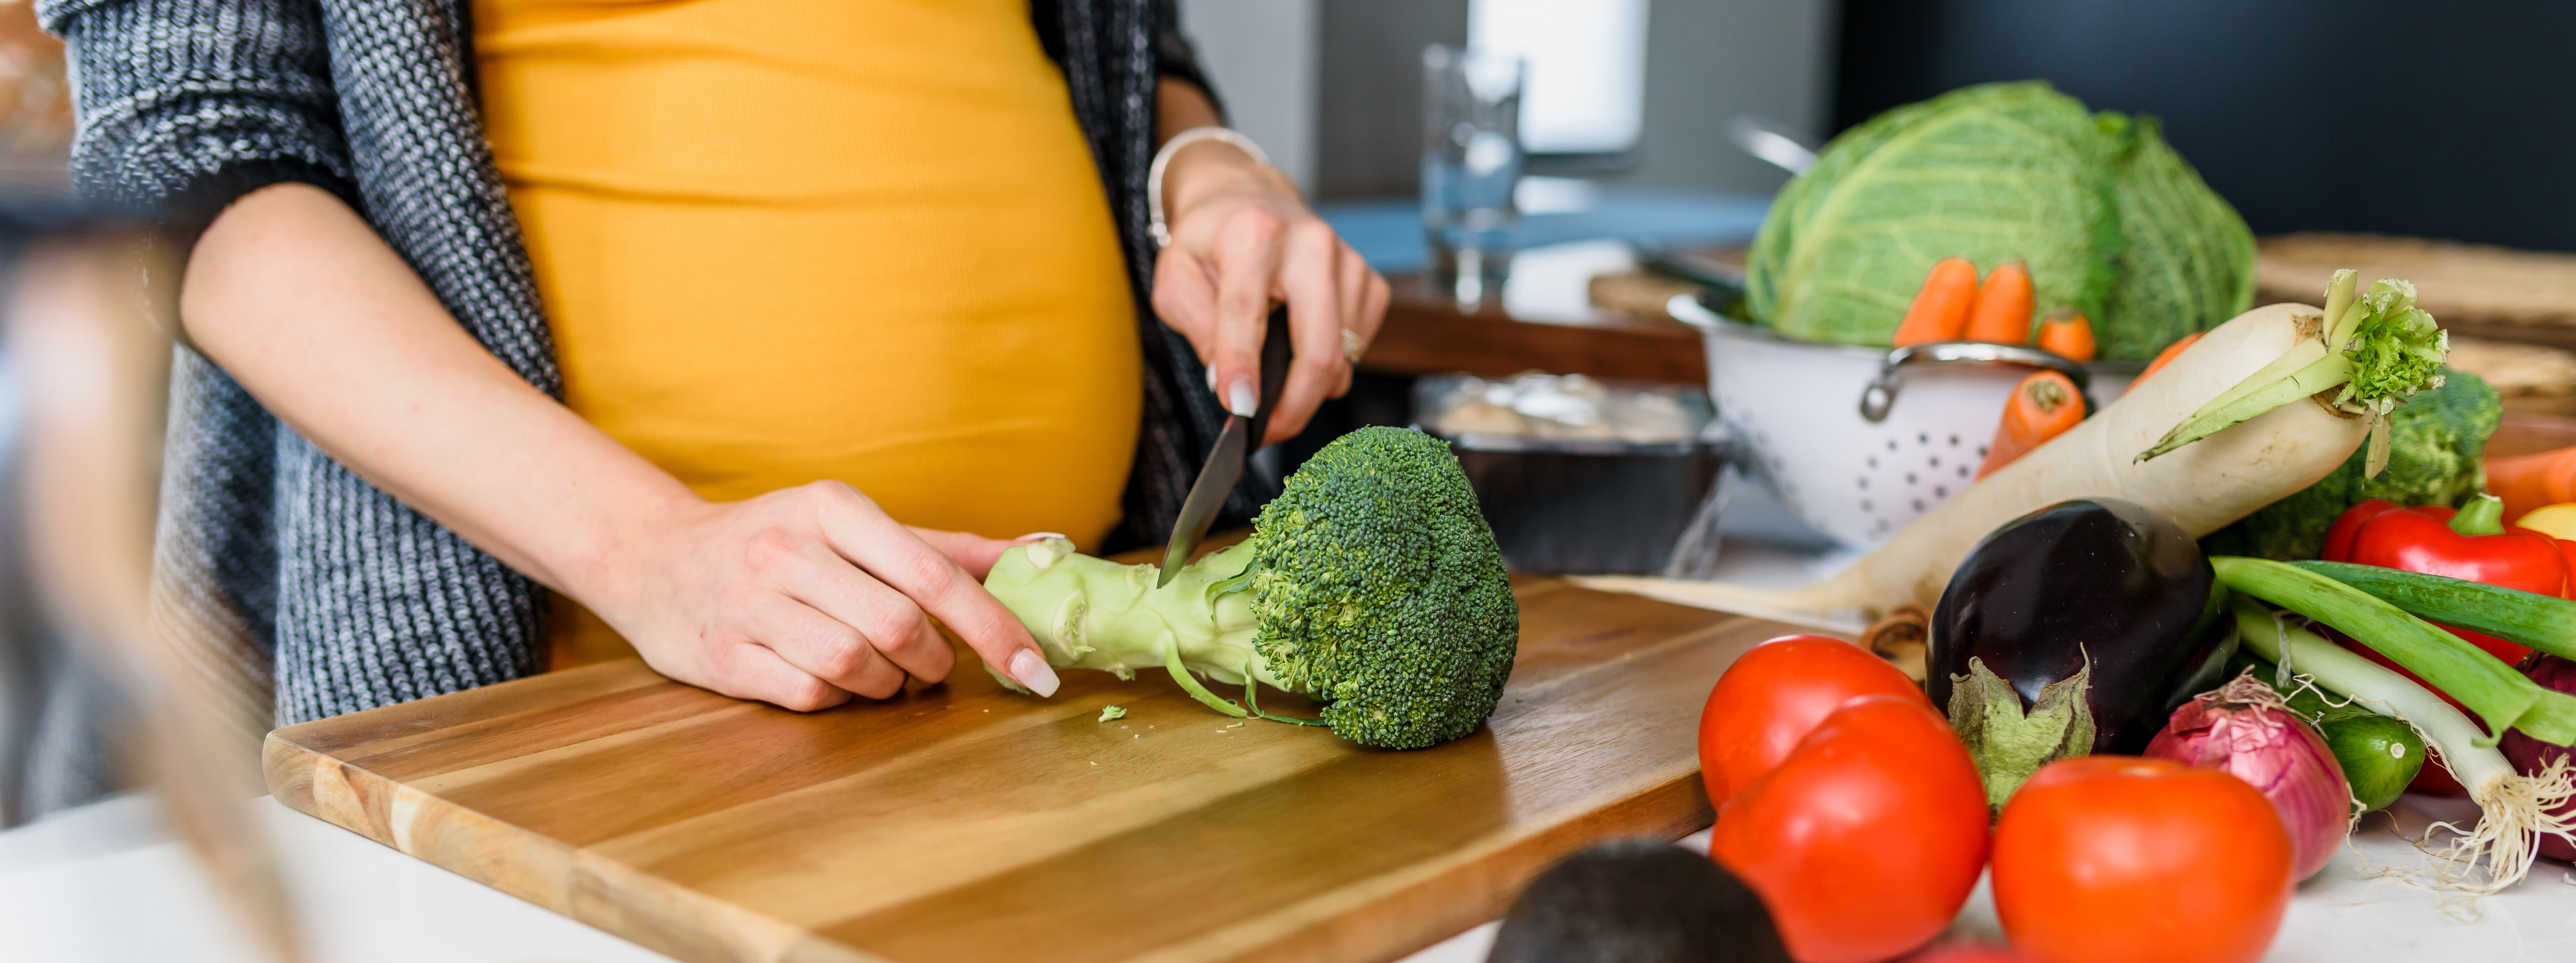 Was essen und was nicht in der schwangerschaft